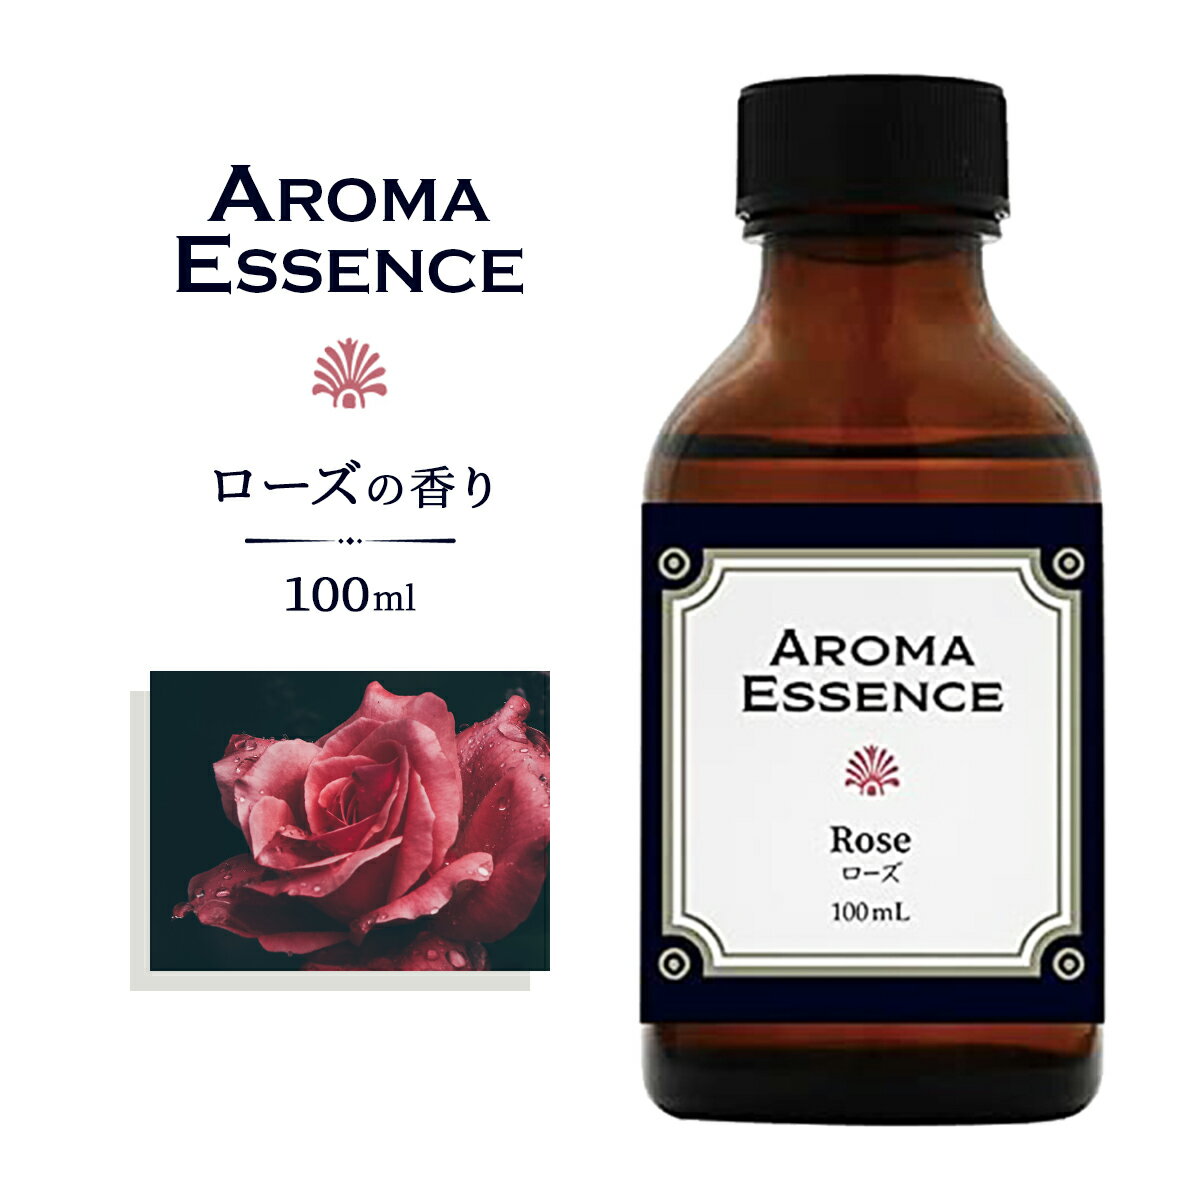 アロマエッセンス ローズ 100ml ばら バラ 薔薇 アロマオイル 調合香料 芳香用 アロマ アロマ加湿器 部屋 全体 自律神経 イライラ 解消 花以外の プレゼント に